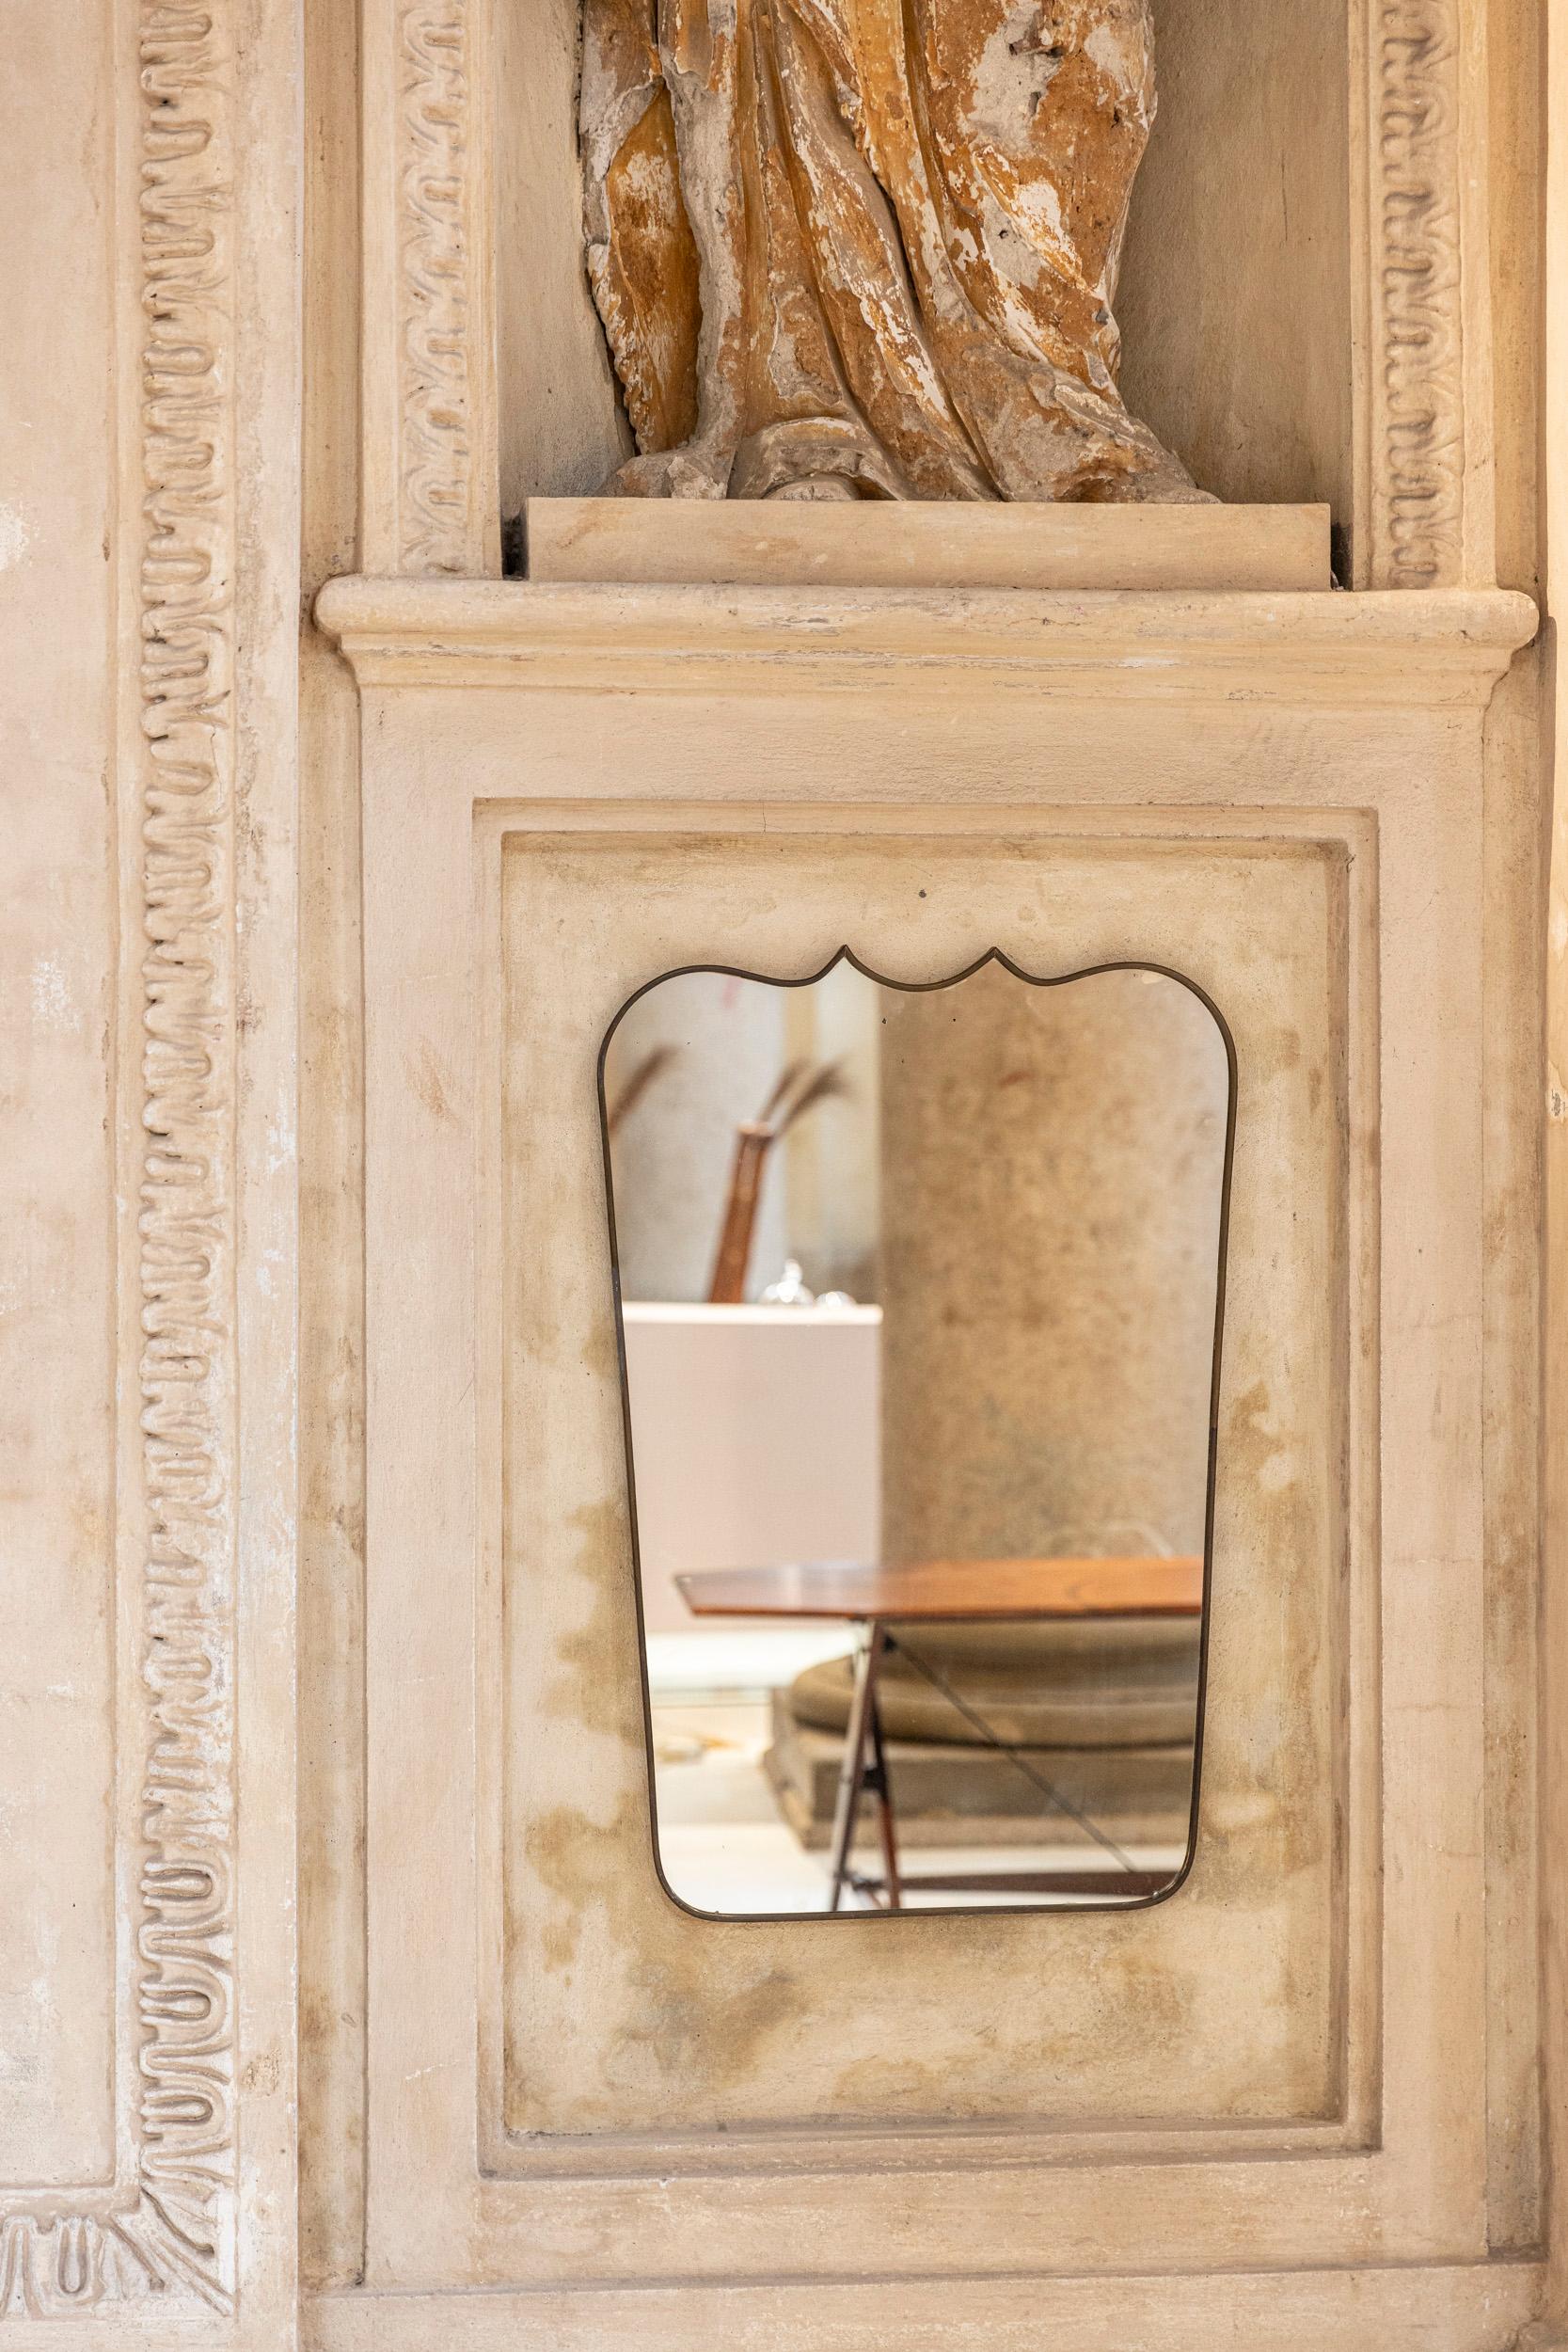 Eleganter Spiegel mit Messingrahmen, der Gio Ponti zugeschrieben wird.
Erstaunlicher und seltener Formrahmen.
Sehr schöne Patina.